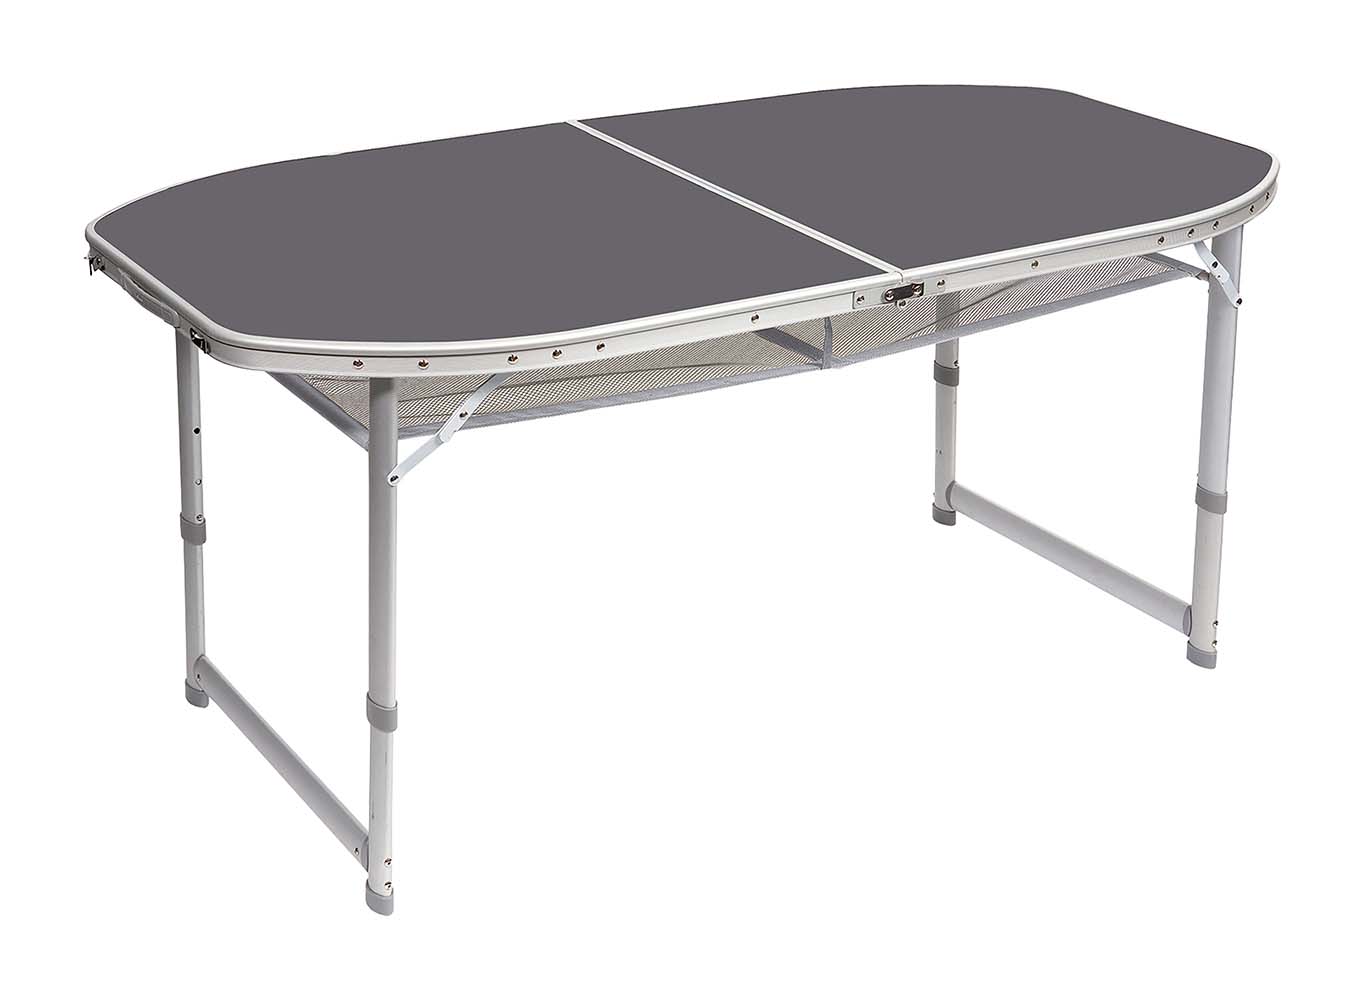 1404399 Een stabiele ovalen campingtafel. Deze tafel heeft verstelbare poten, stelschroeven voor extra fijnstelling en een deelbaar tafelblad. Hierdoor is de tafel eenvoudig op te vouwen tot koffermodel. Gemaakt van lichtgewicht aluminium. De poten zijn in 3 verschillende hoogtes verstelbaar (55/65/70 cm). Onder het tafelblad is een net bevestigd om spullen op te bergen. Ingeklapt (lxbxh): 80x75x7cm.